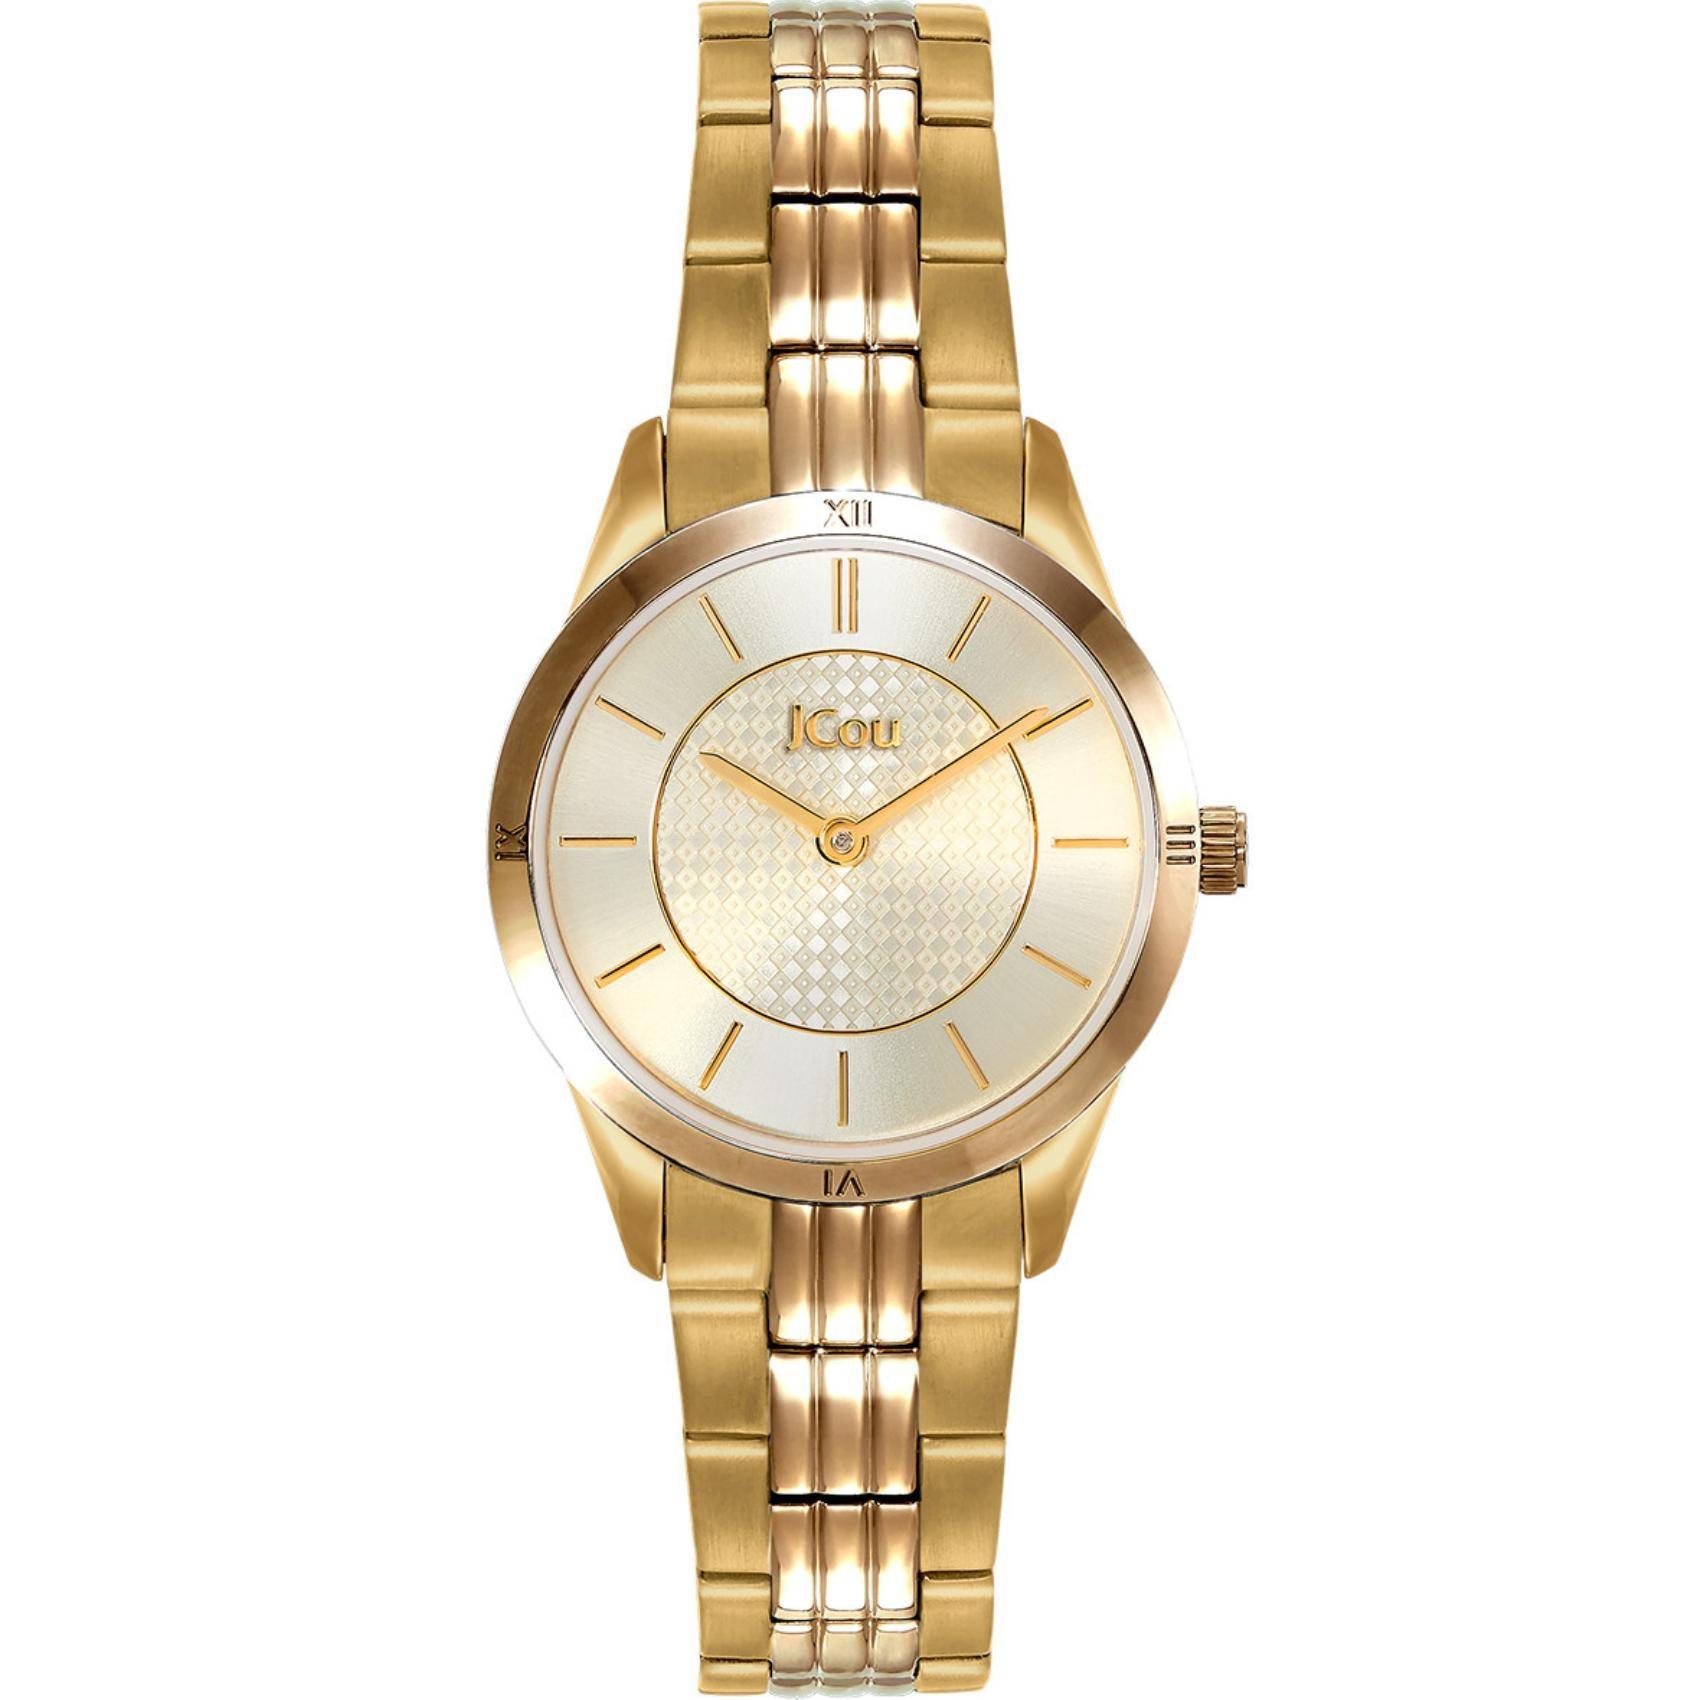 Γυναικείο ρολόι JCOU Adelle JU19039-4 με χρυσό ατσάλινο μπρασελέ χρυσό καντράν, μηχανισμό μπαταρίας quartz και στρογγυλό στεφάνι διαμέτρου 28mm αδιάβροχο σις 10ATM-100M.